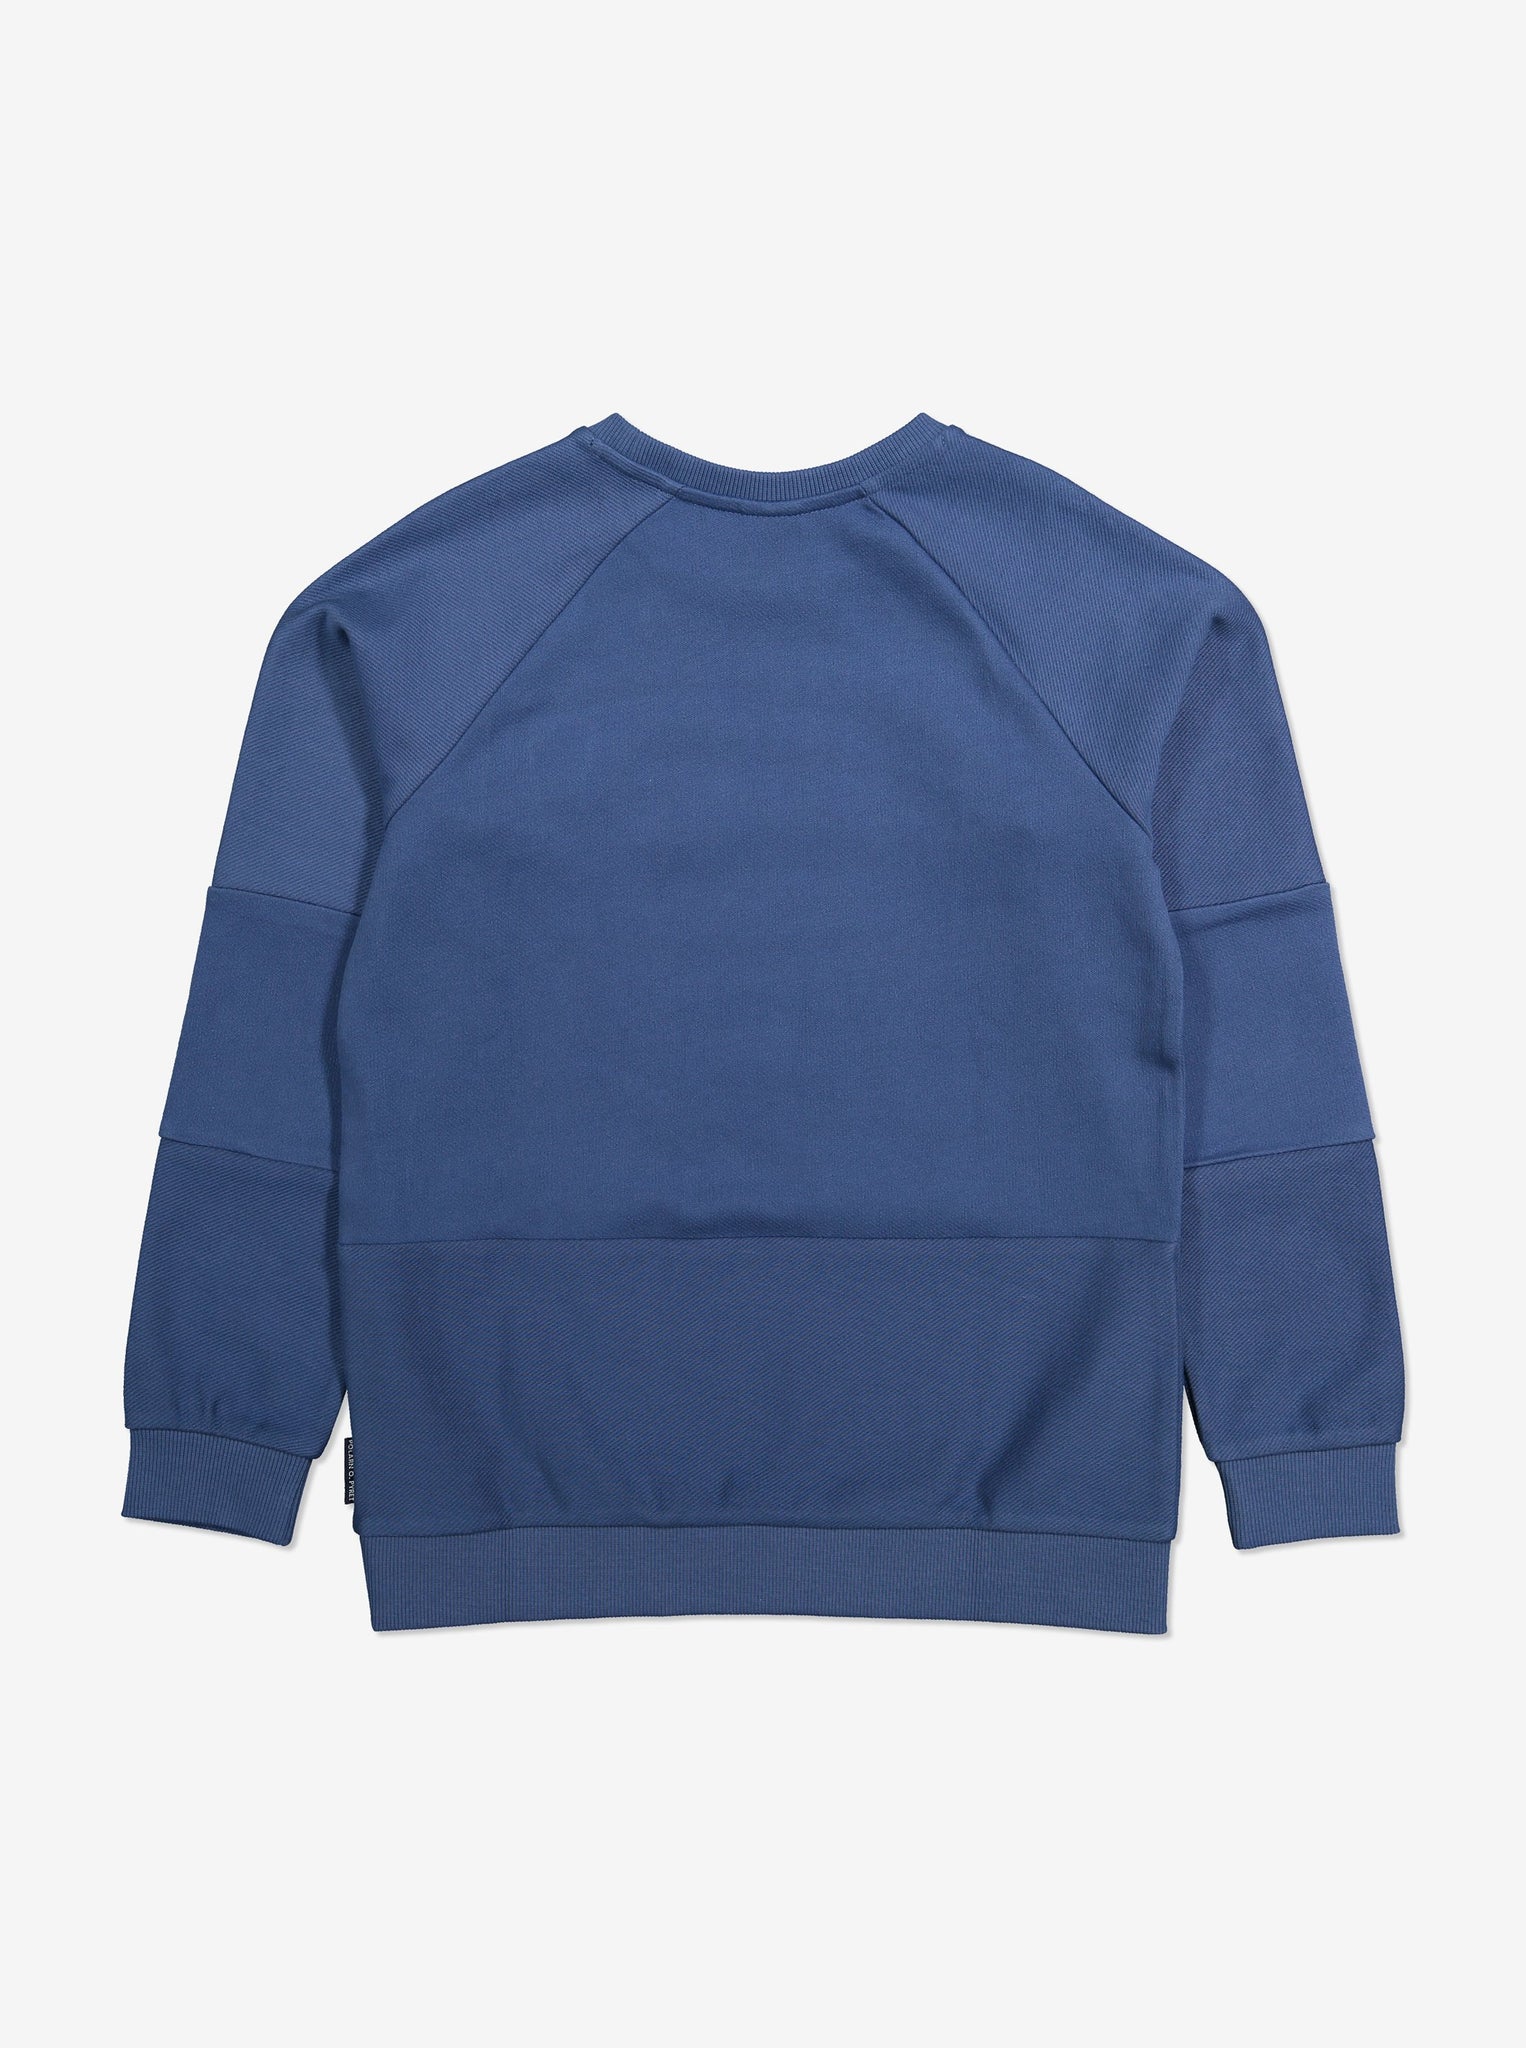 Herringbone Kids Sweatshirt-Unisex-6-12y-Blue